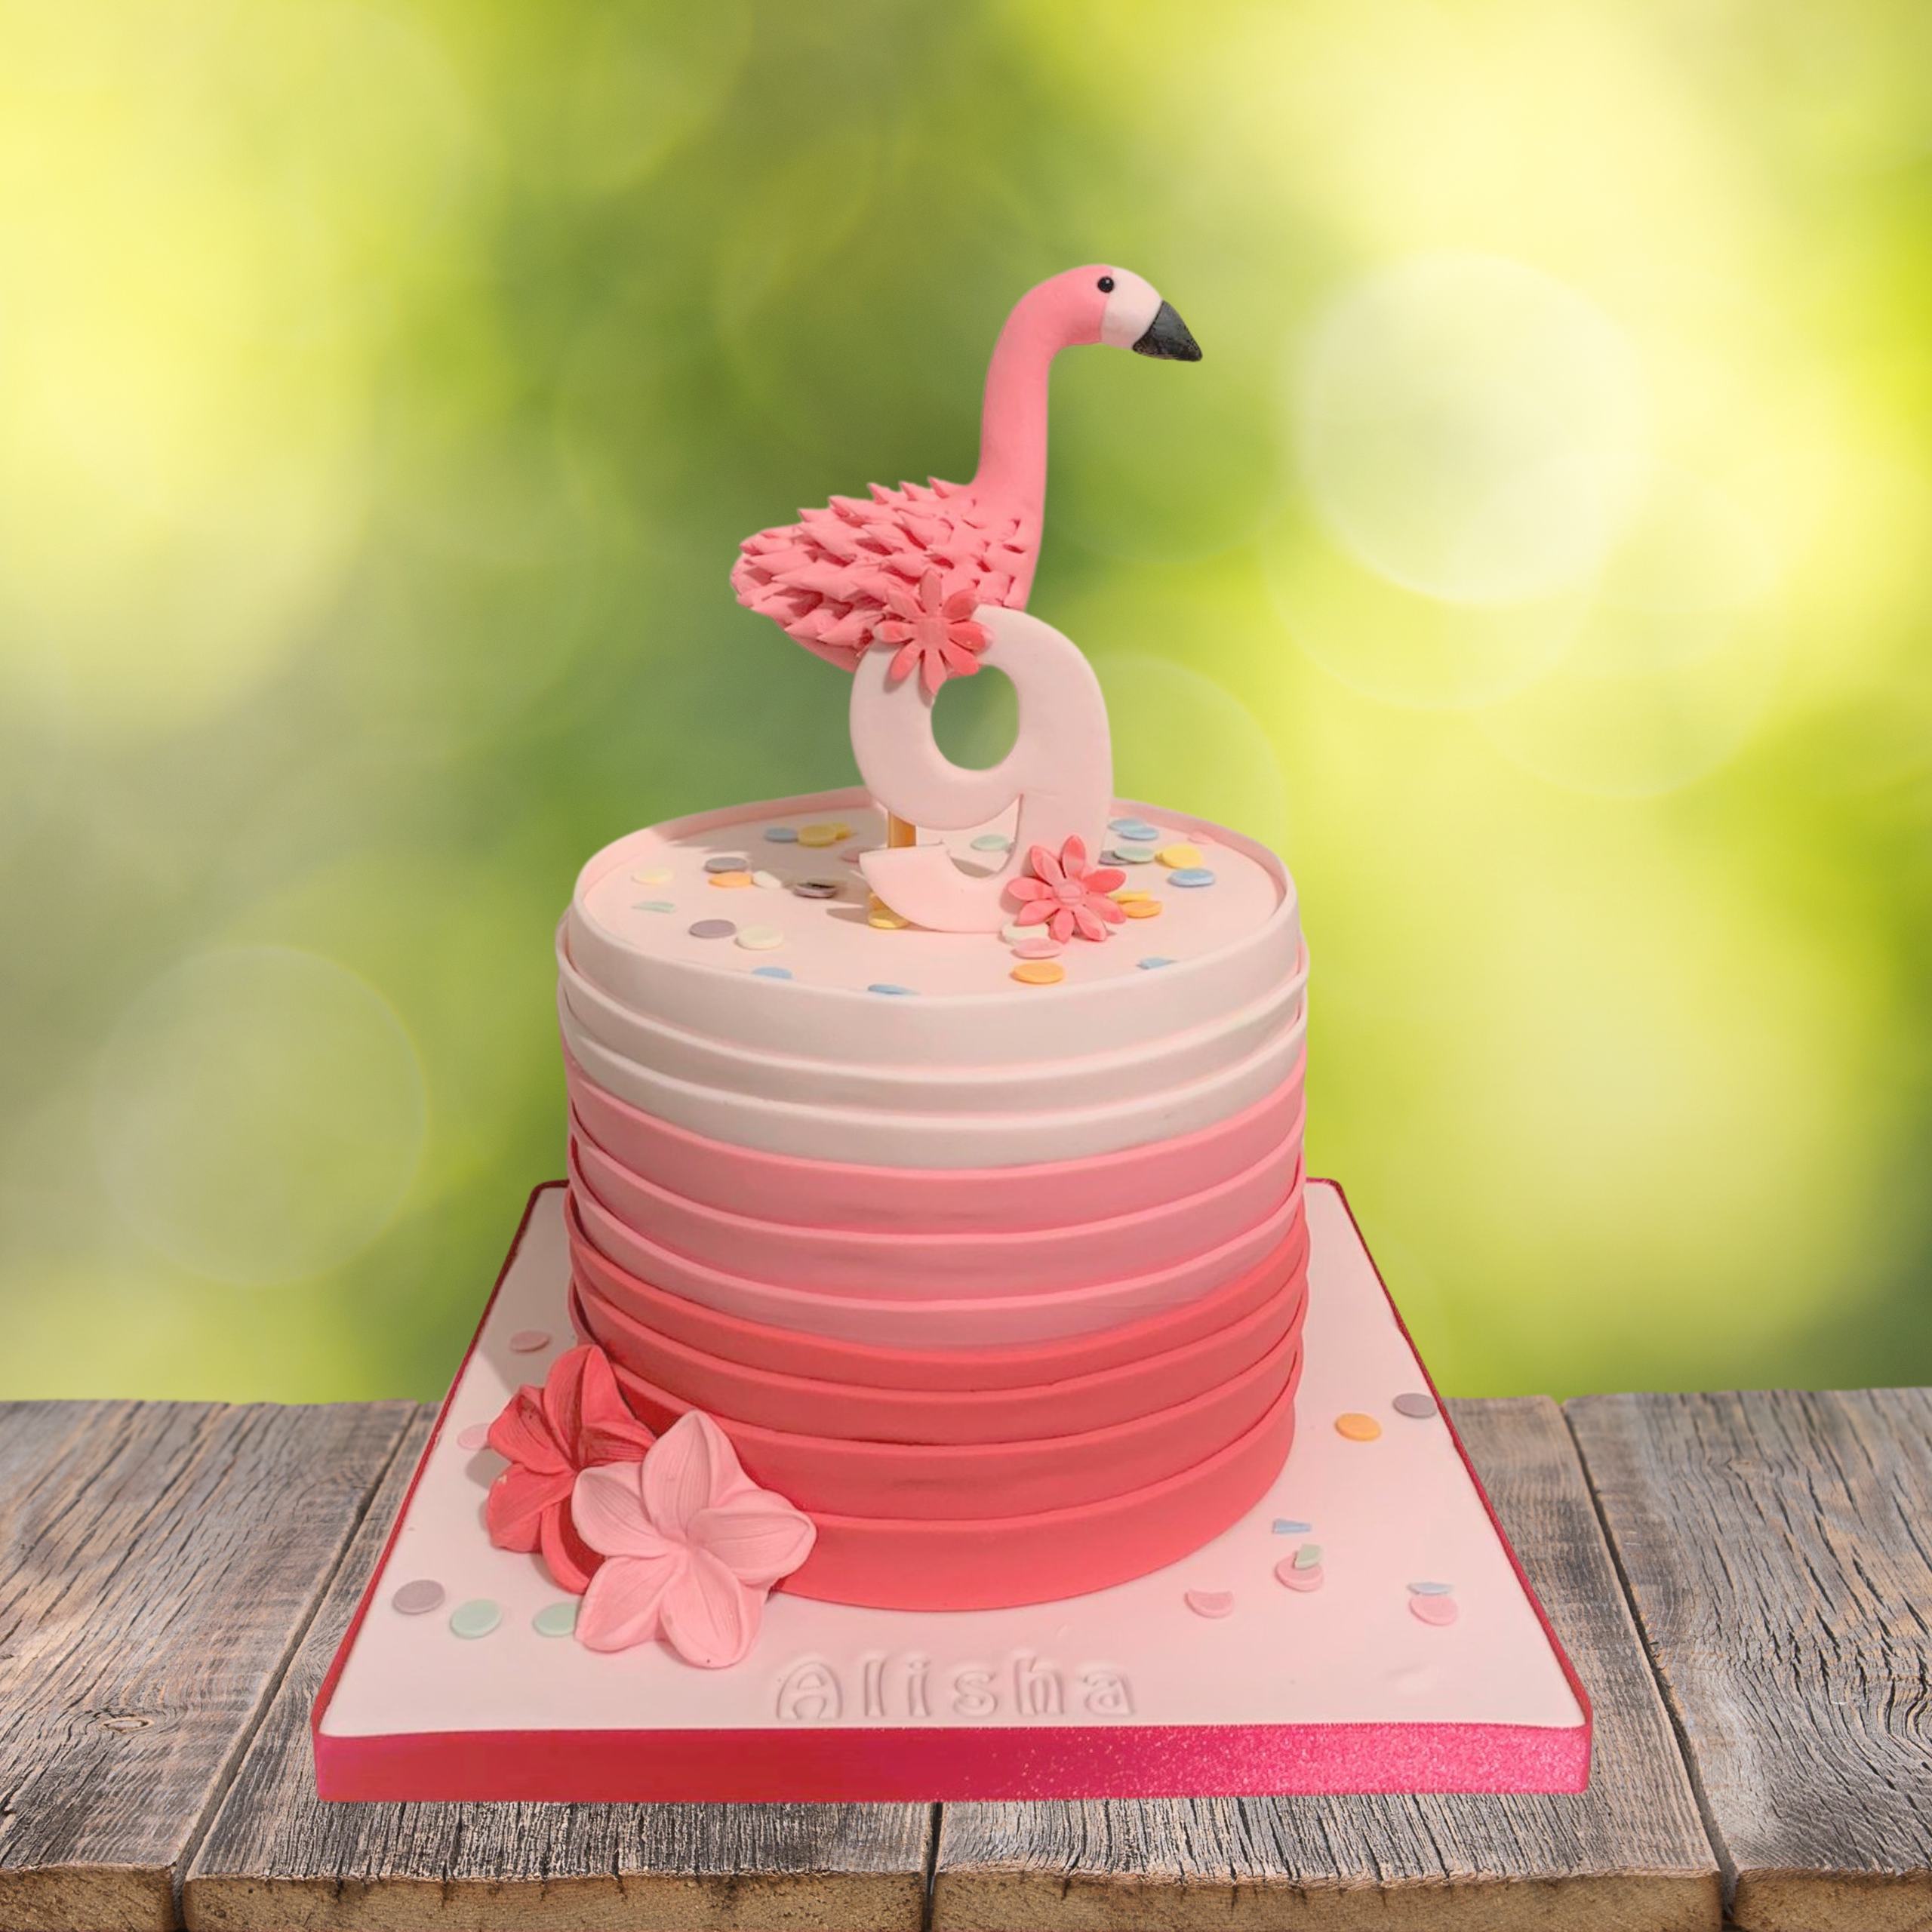 Gelach Havoc Flash Dieren taart flamingo 1 - Droomtaart